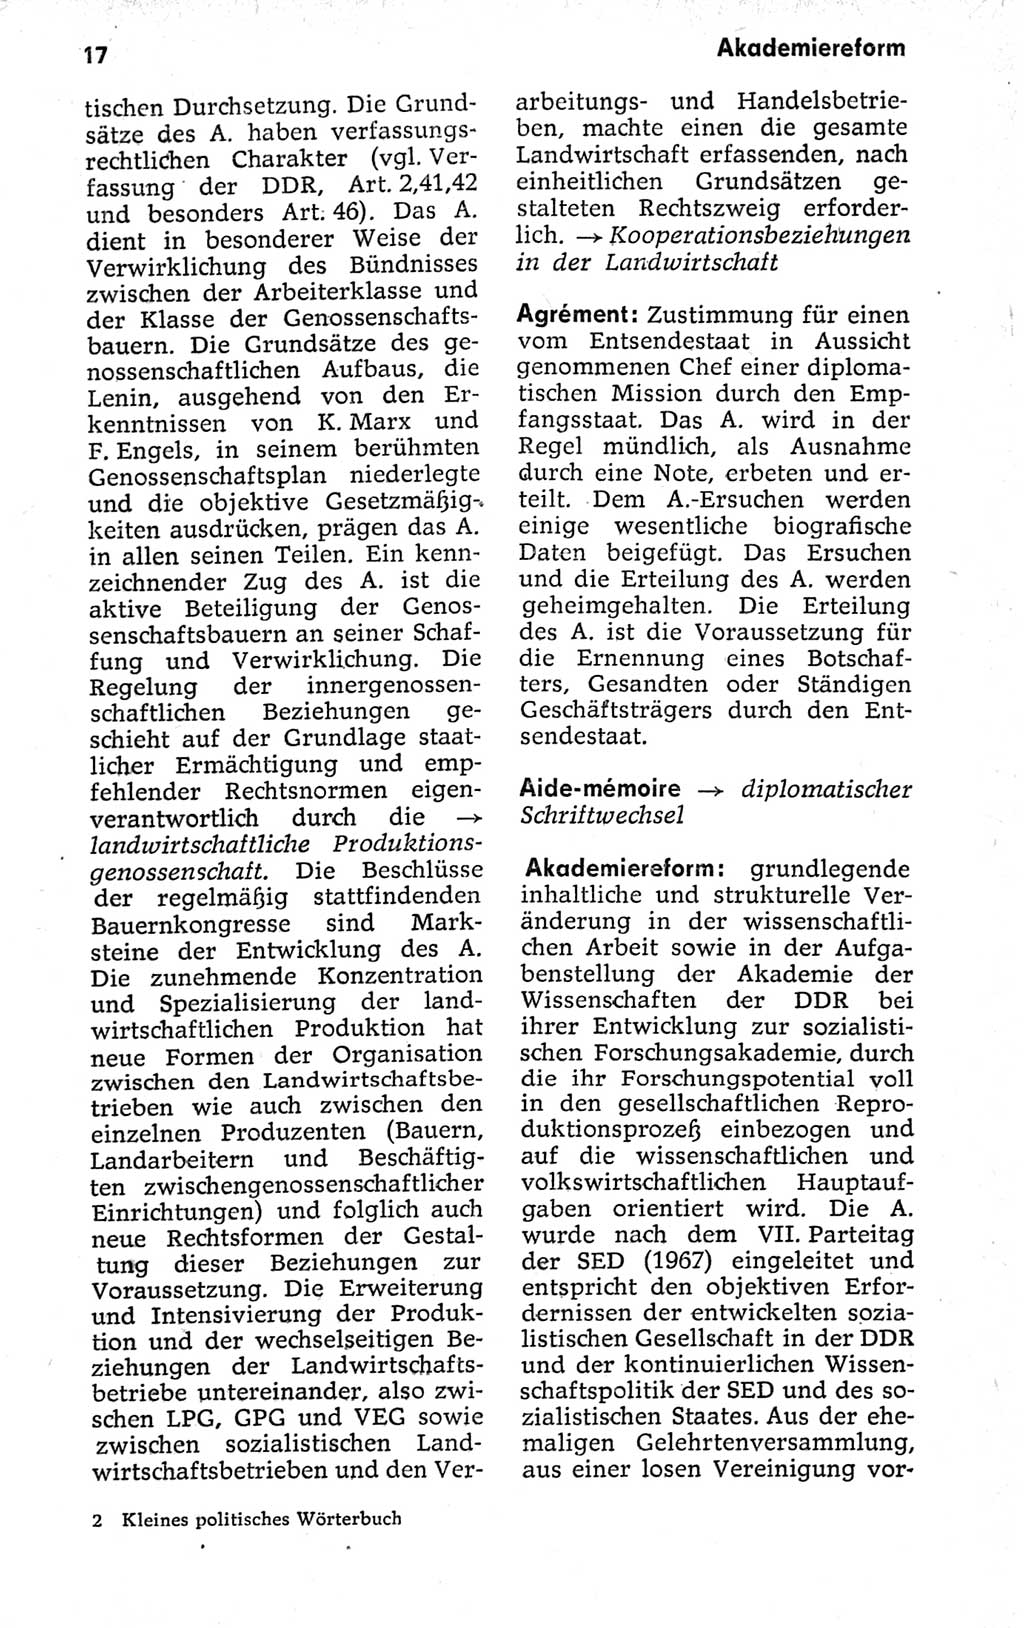 Kleines politisches Wörterbuch [Deutsche Demokratische Republik (DDR)] 1973, Seite 17 (Kl. pol. Wb. DDR 1973, S. 17)